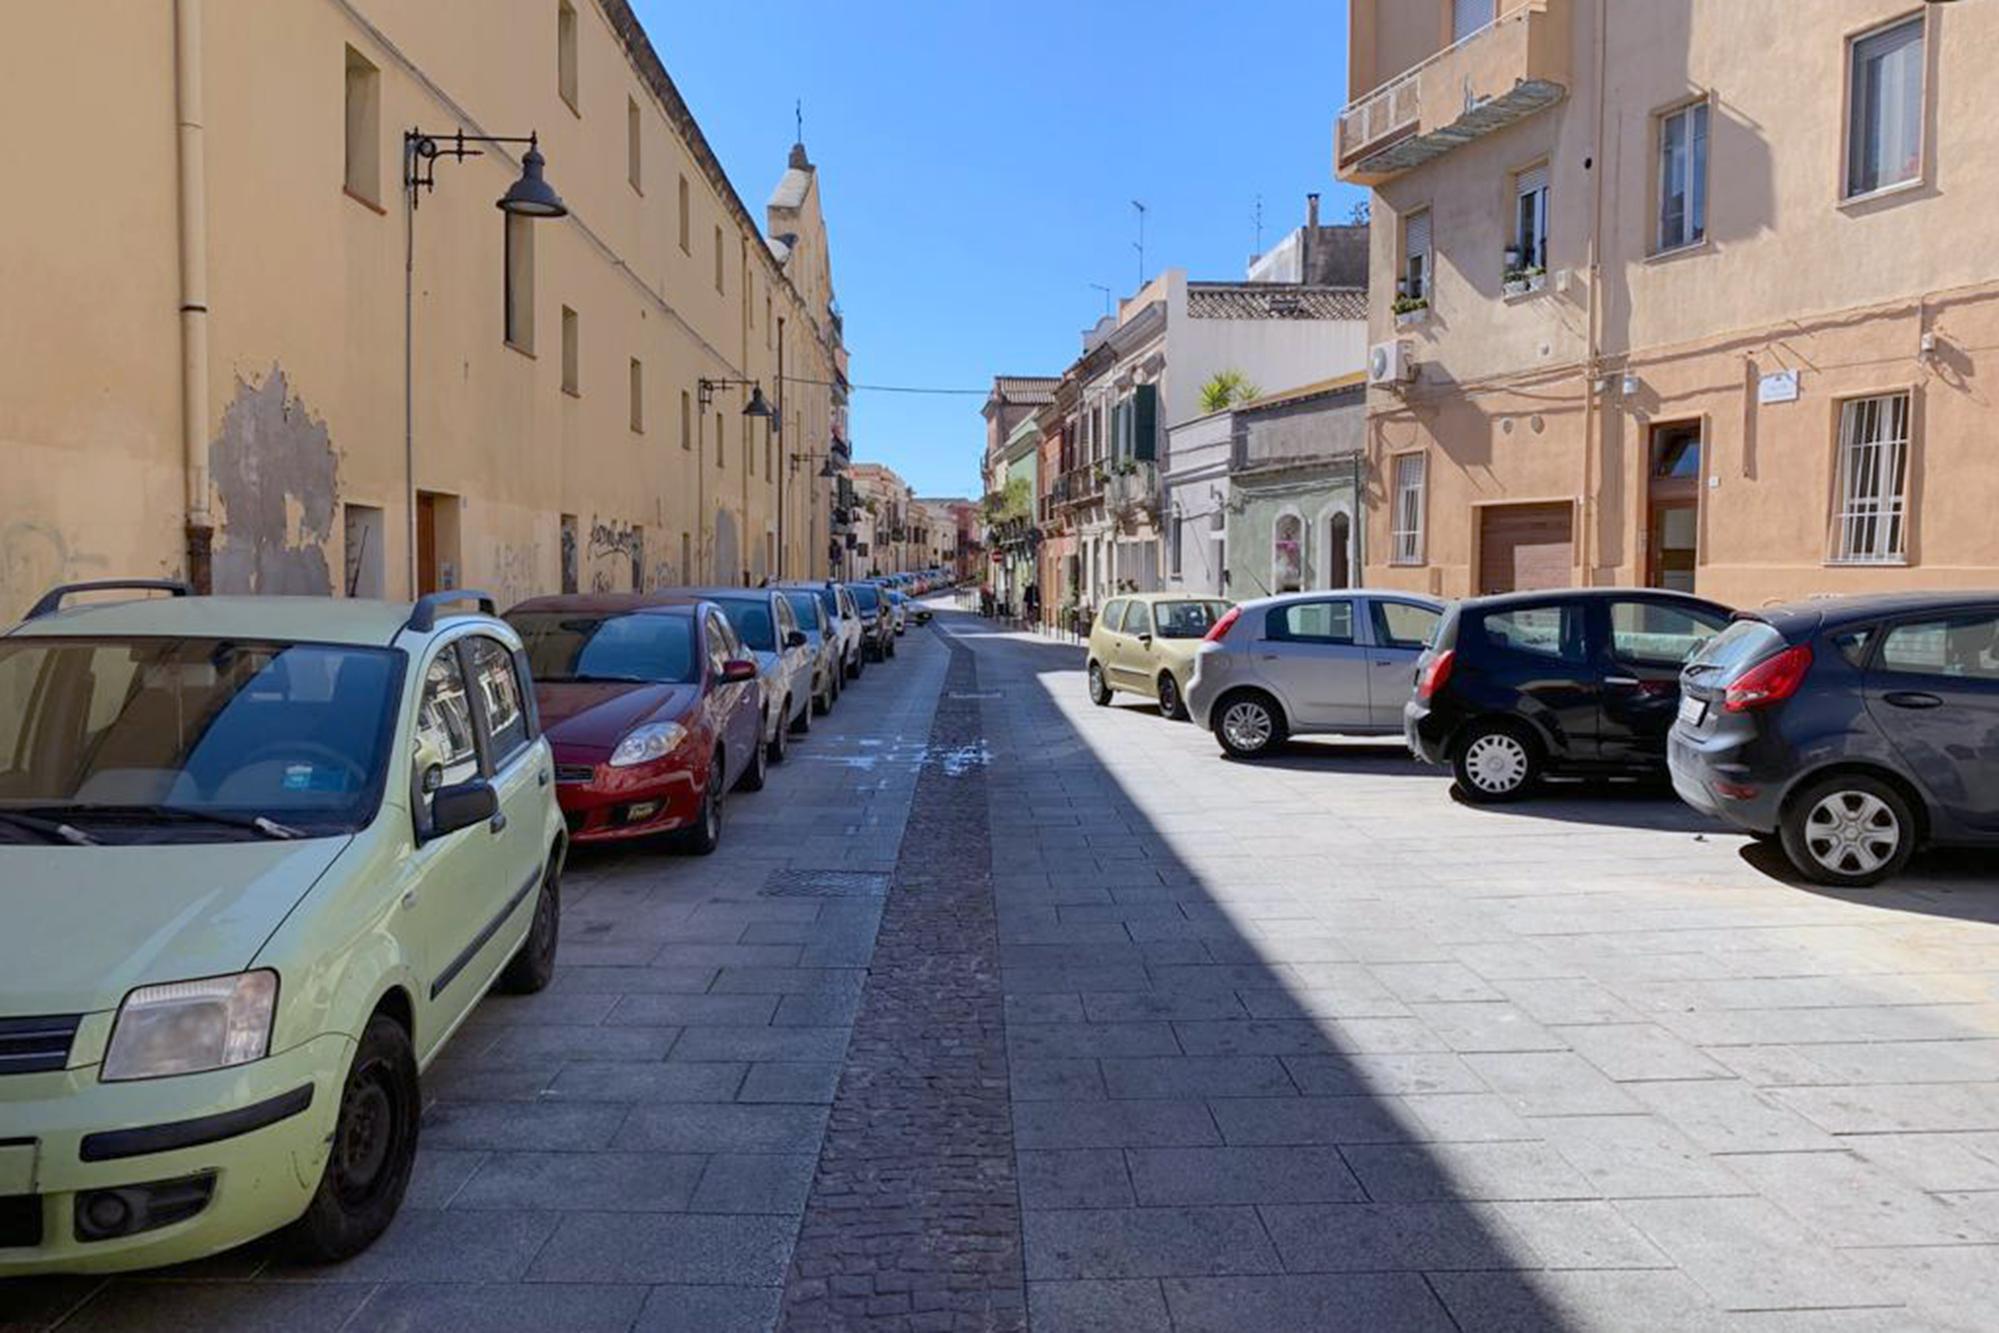 Subaffitta abusivamente l’appartamento preso in locazione a 12 stranieri: sanzionato a Cagliari